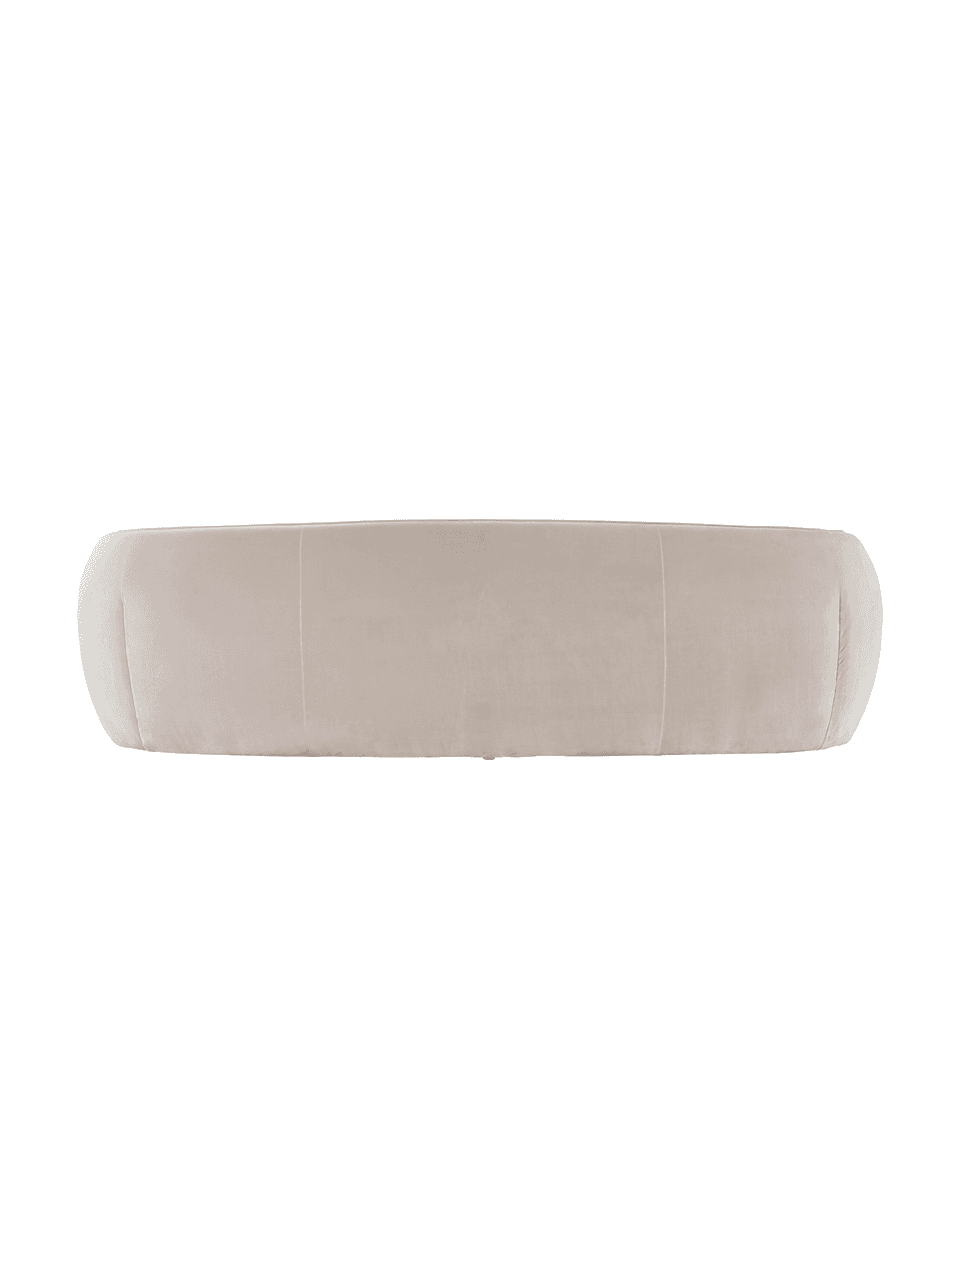 Sofa z aksamitu Austin (3-osobowa), Tapicerka: 89% bawełna, 11% polieste, Aksamitny beżowy, S 232 x G 92 cm